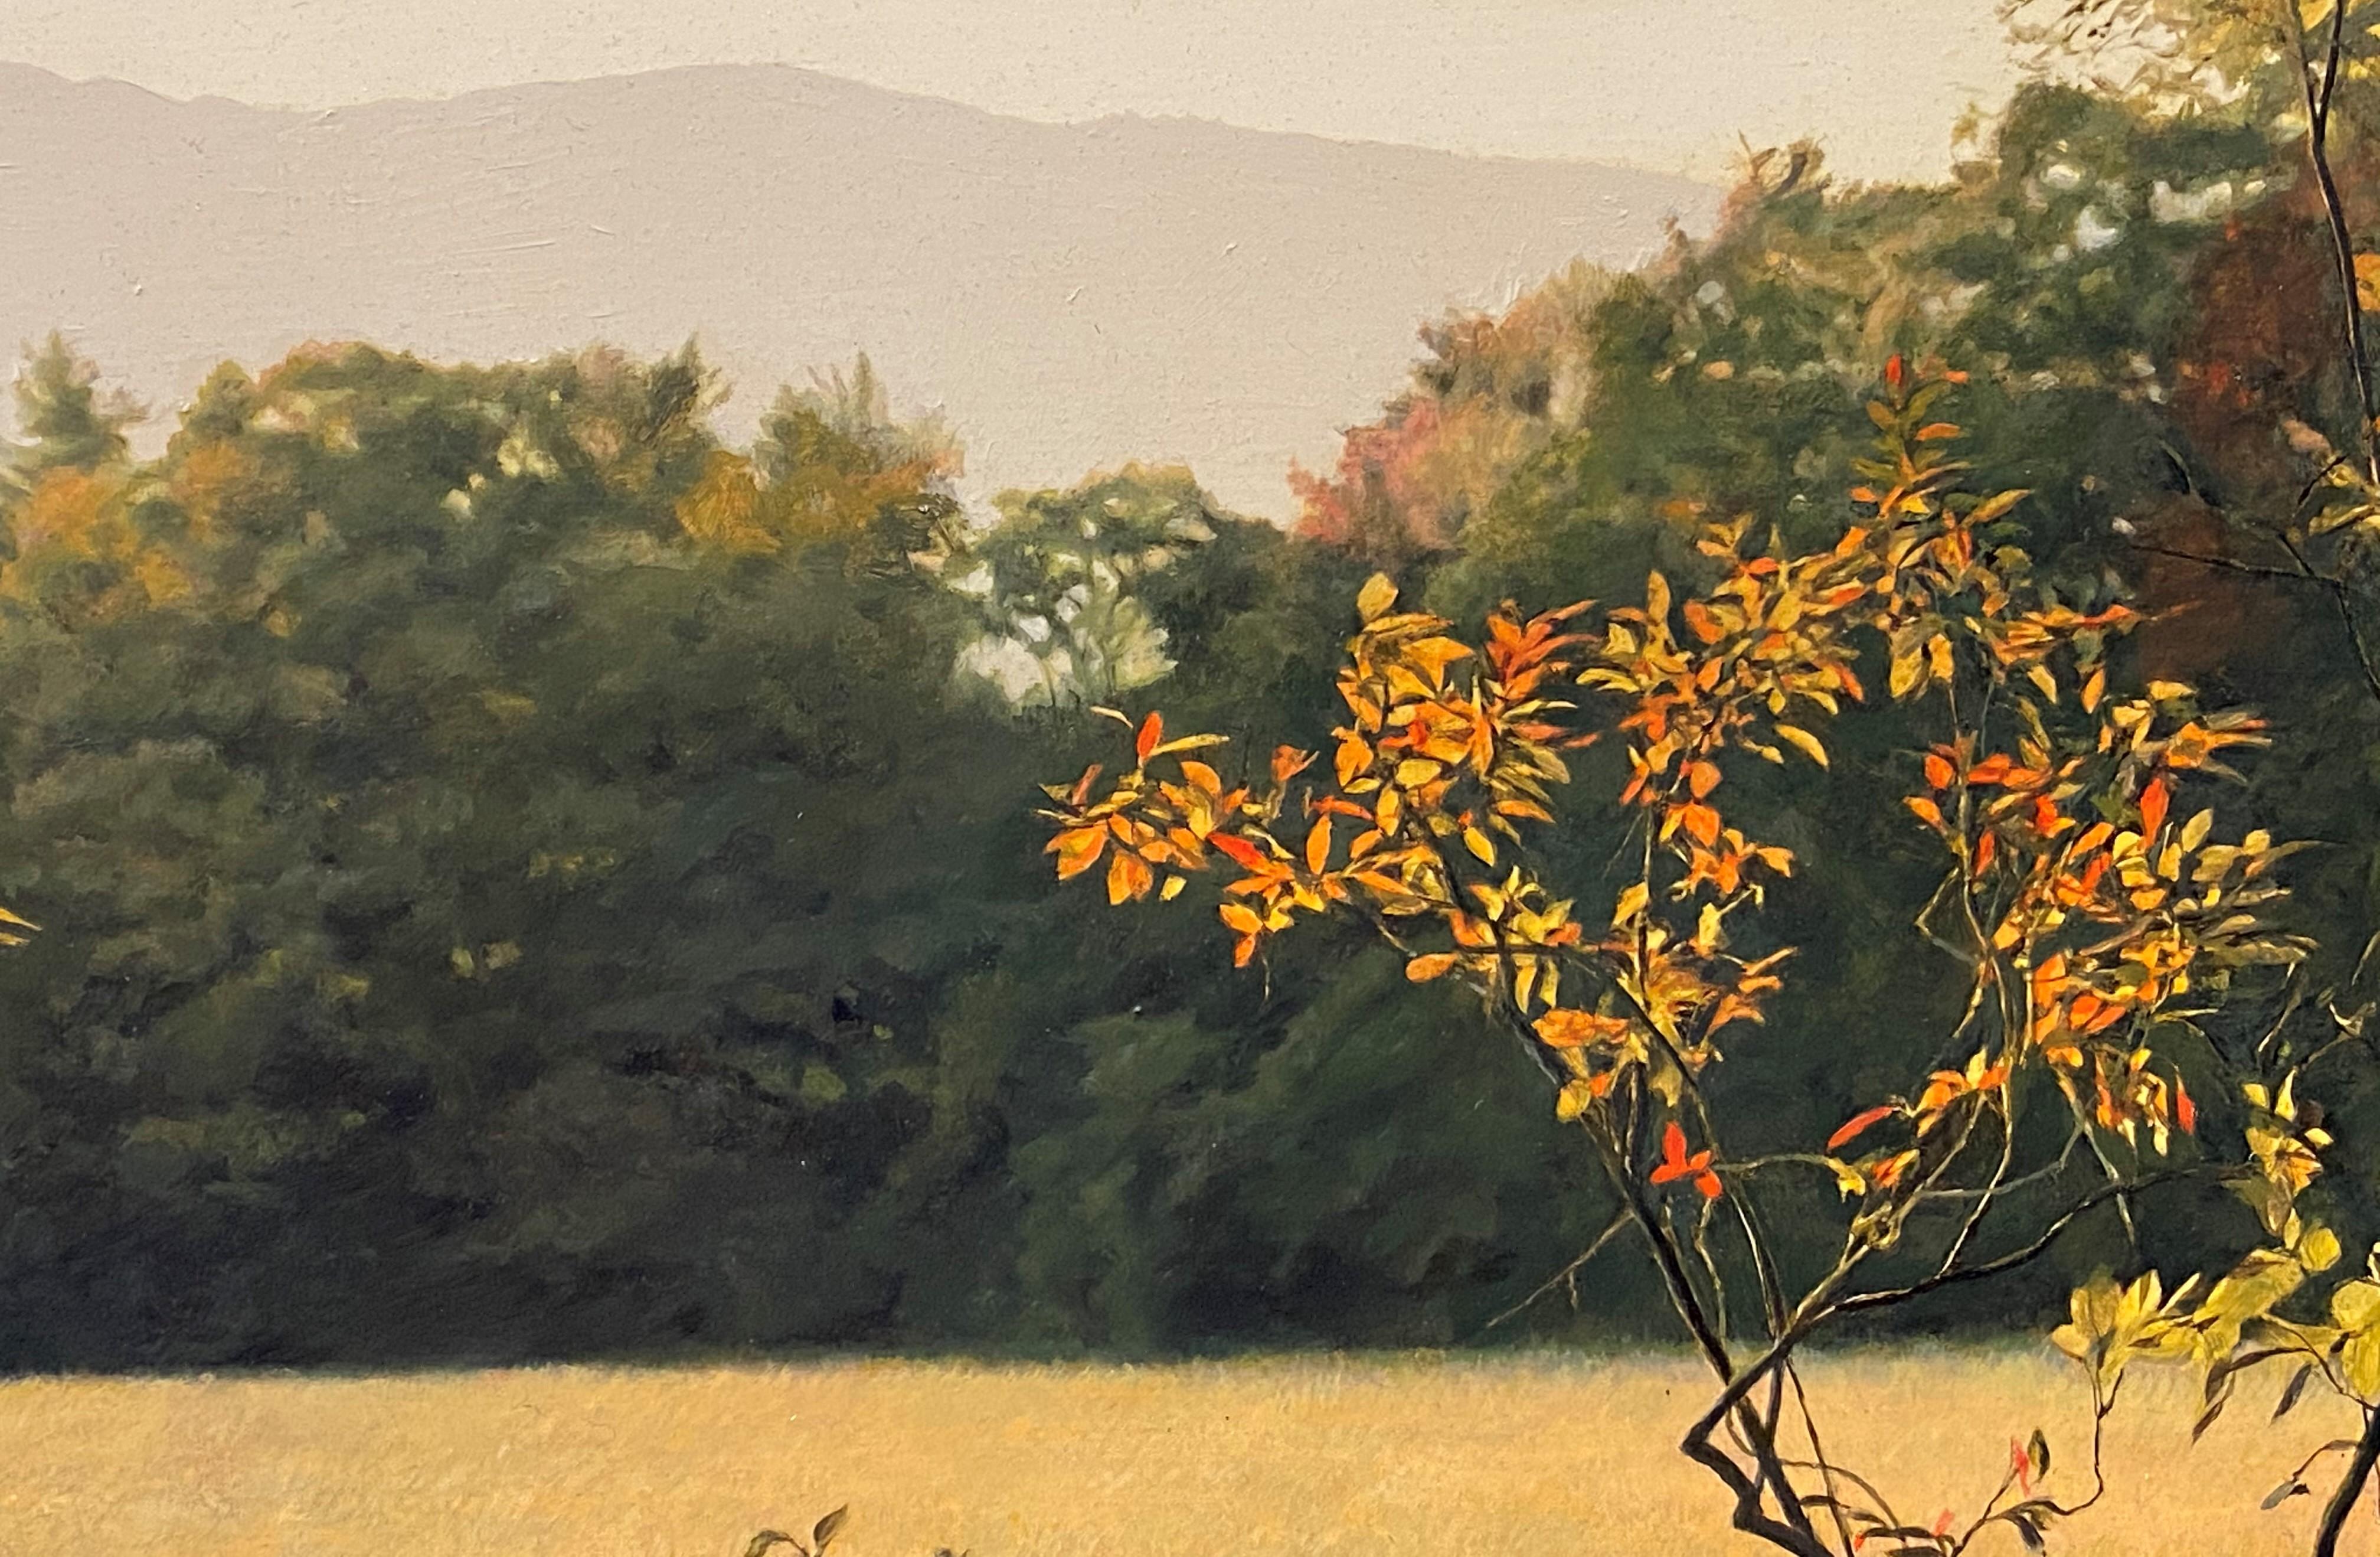 Après-midi doré, Mont Monadnock, NH - Réalisme Painting par Erick Ingraham